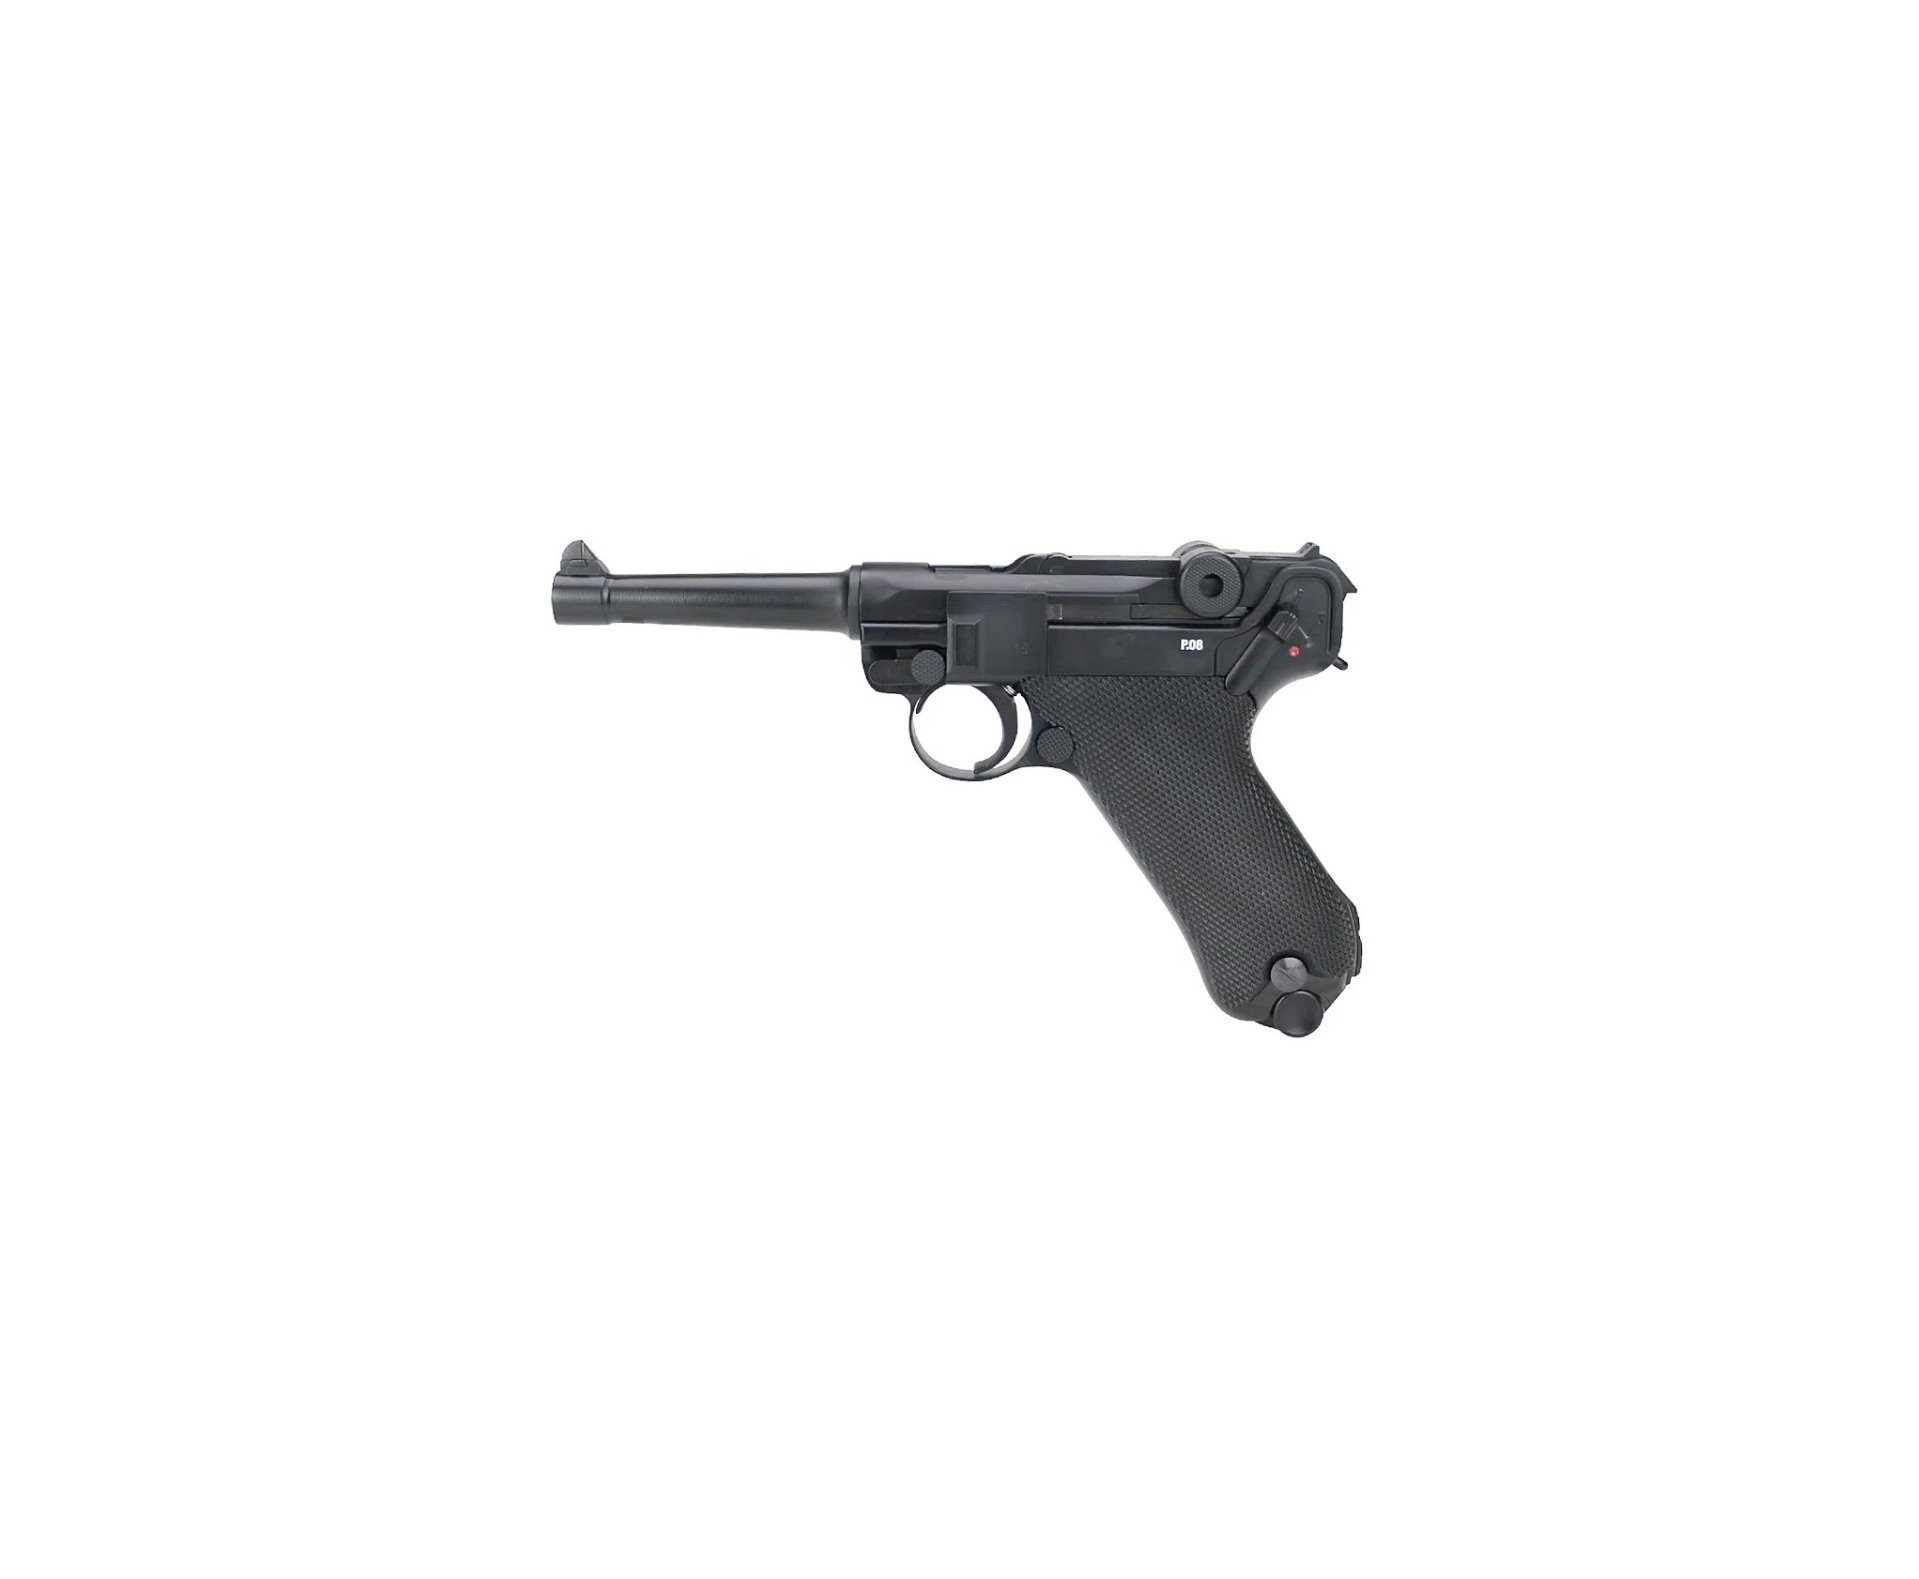 Pistola de Pressão CO2 Luger P08 WWII Blowback 4.5mm Legends/Umarex + Co2 + BBS de Aço + Capa de Transporte